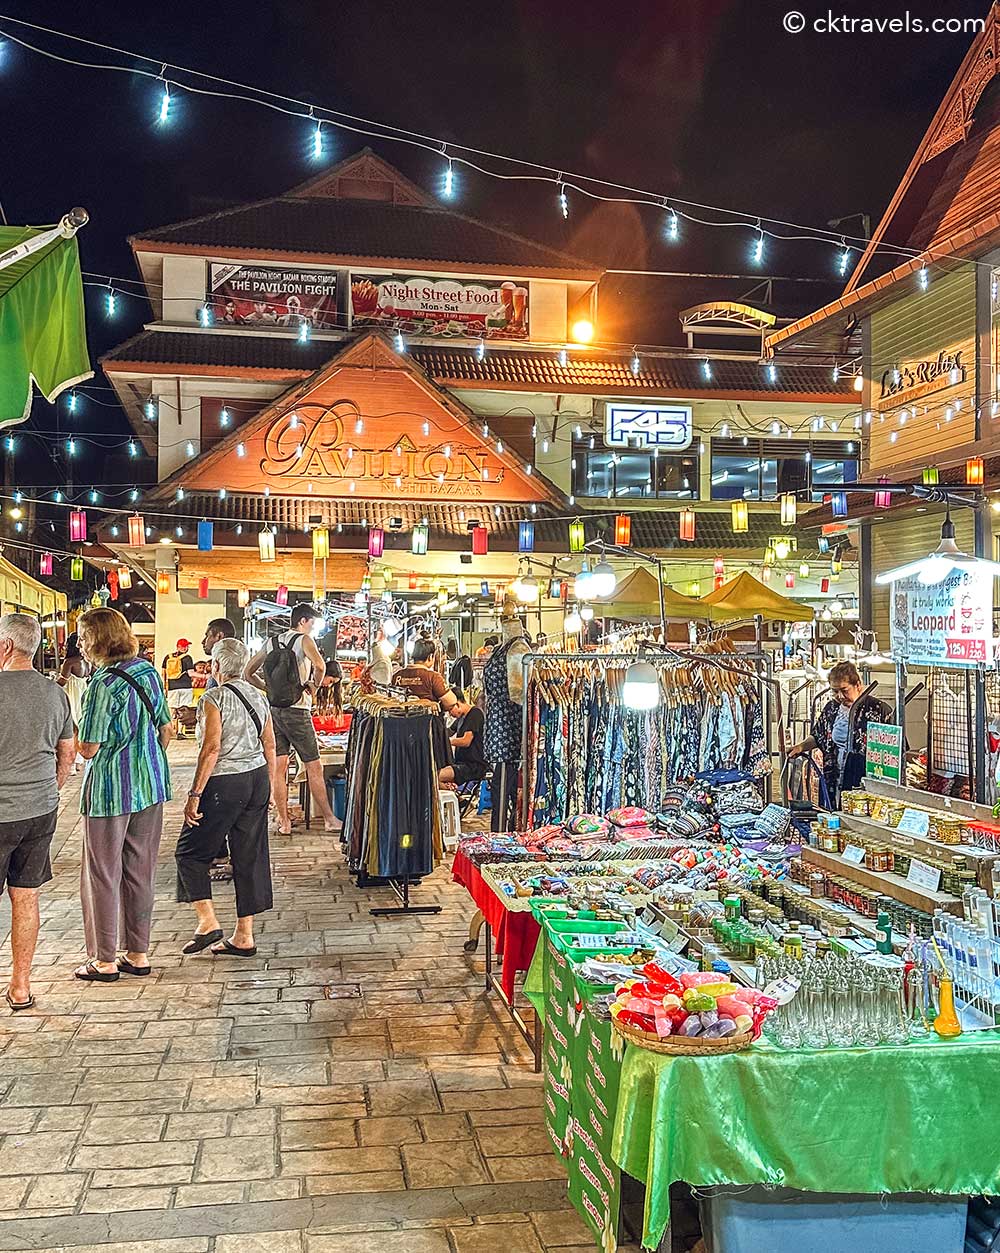 https://www.cktravels.com/best-chiang-mai-night-markets/